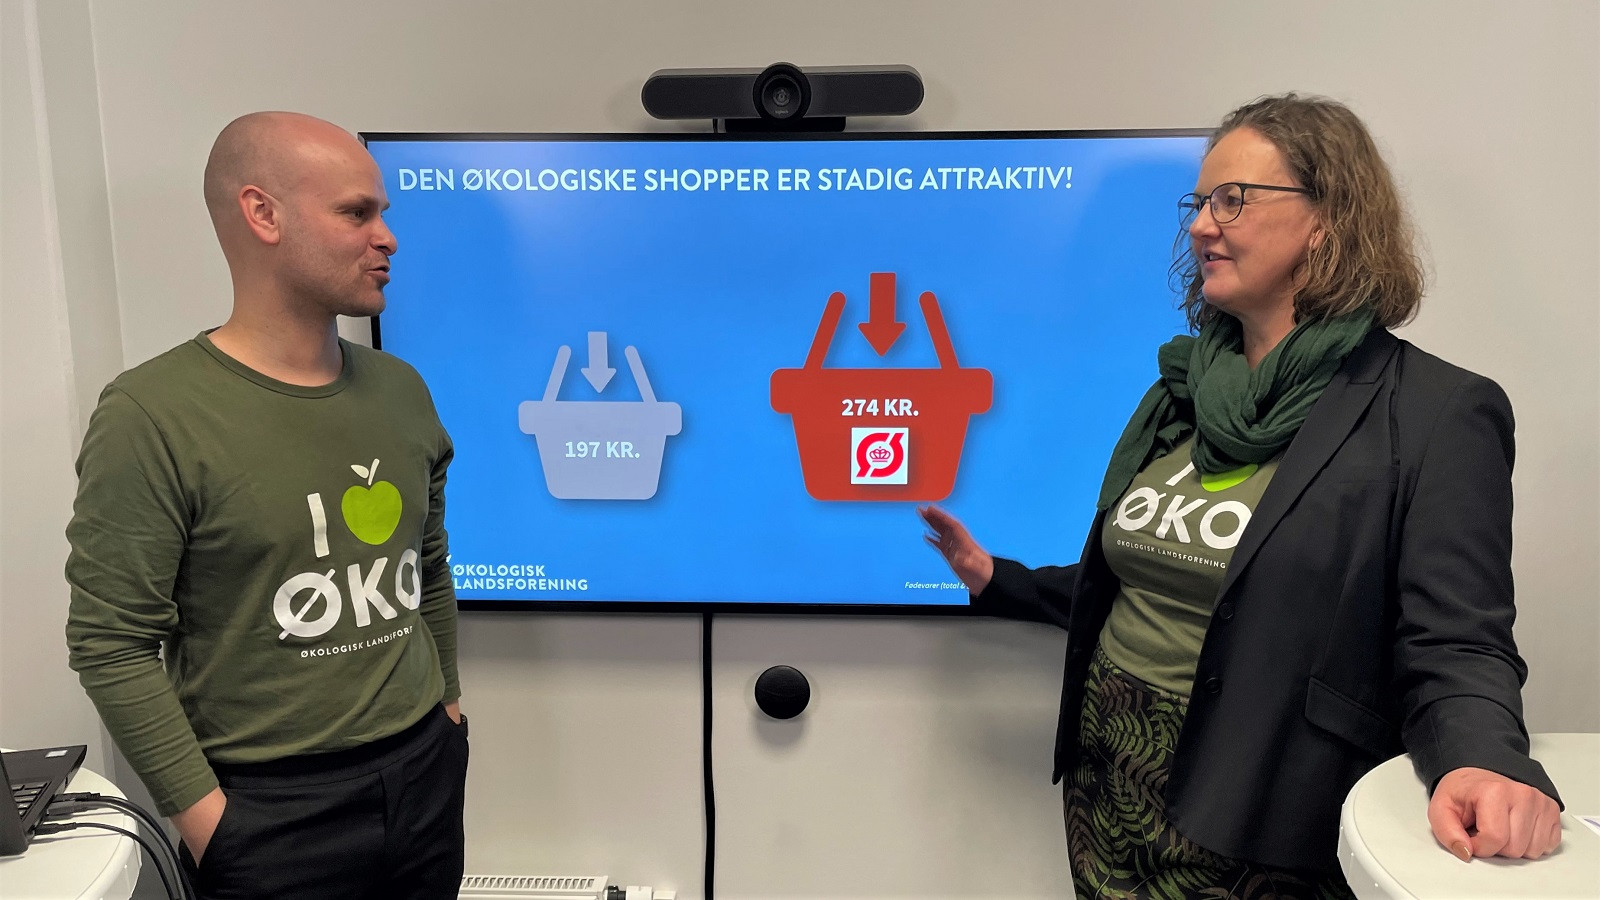 Peter Rasmussen og Birgitte Jørgensen fra Økologisk Landsforening kunne blandt andet fortælle, at det trods tilbagegangen i salget i 2022 stadig er den økologiske kunde, som fylder flest varer i indkøbskurven